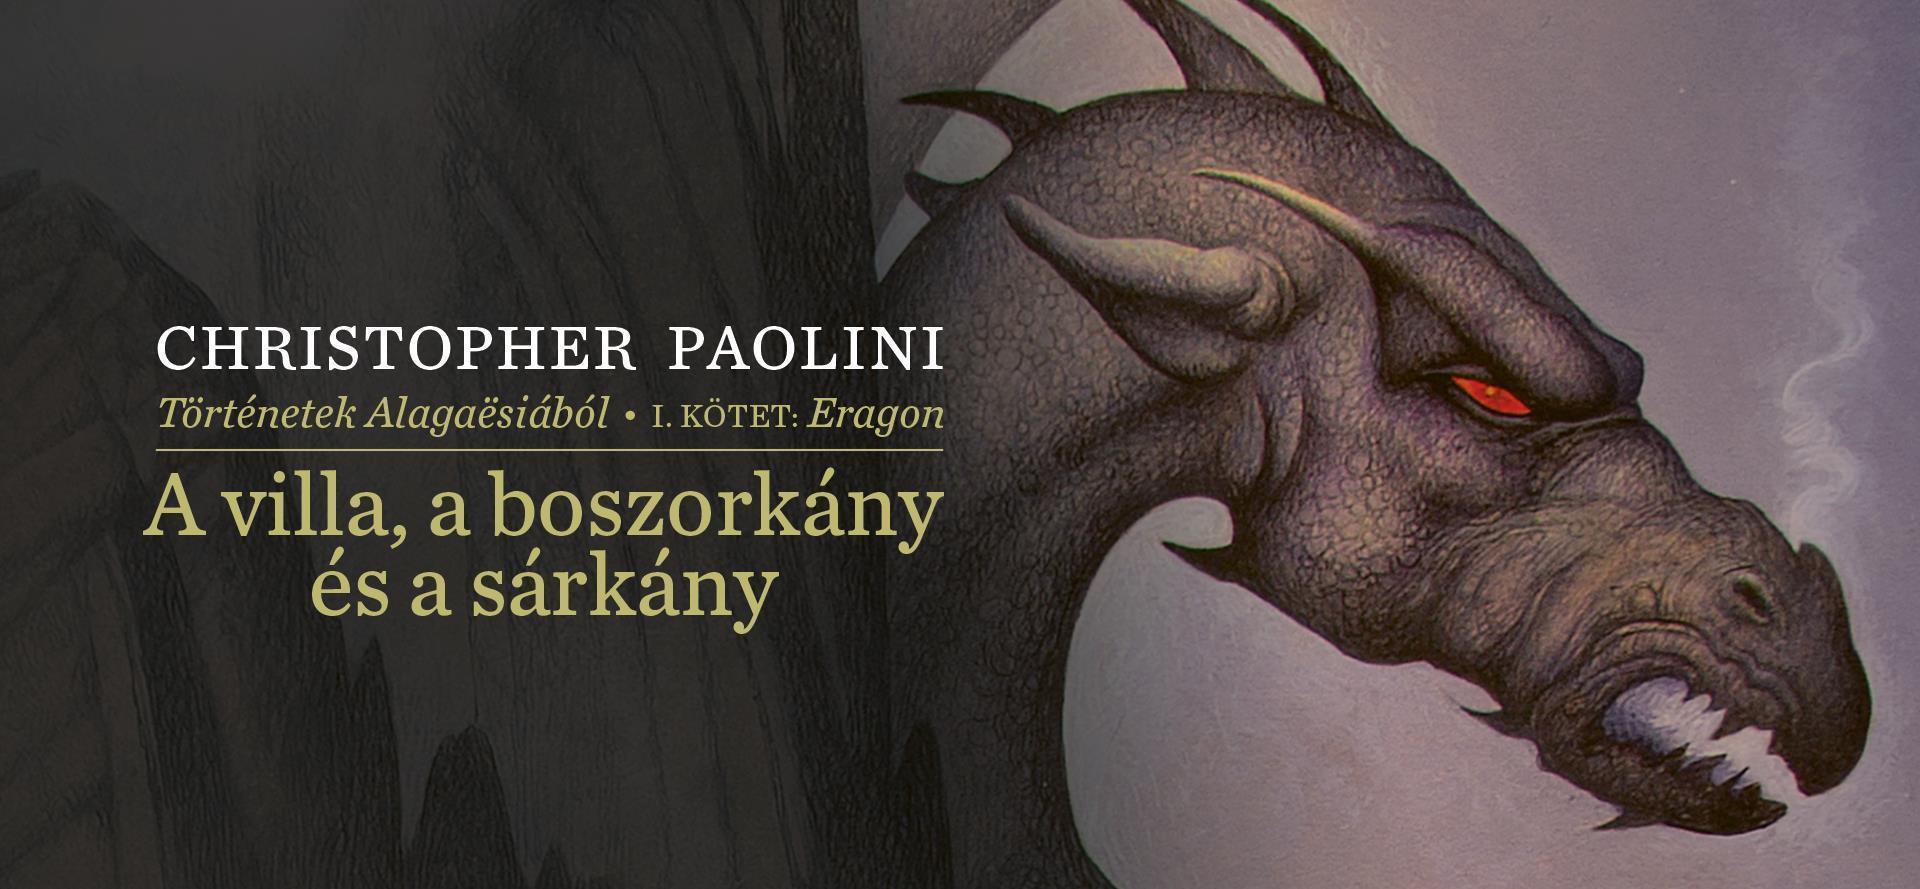 Előrendelhető Christopher Paolini új kötete, A villa, a boszorkány és a sárkány